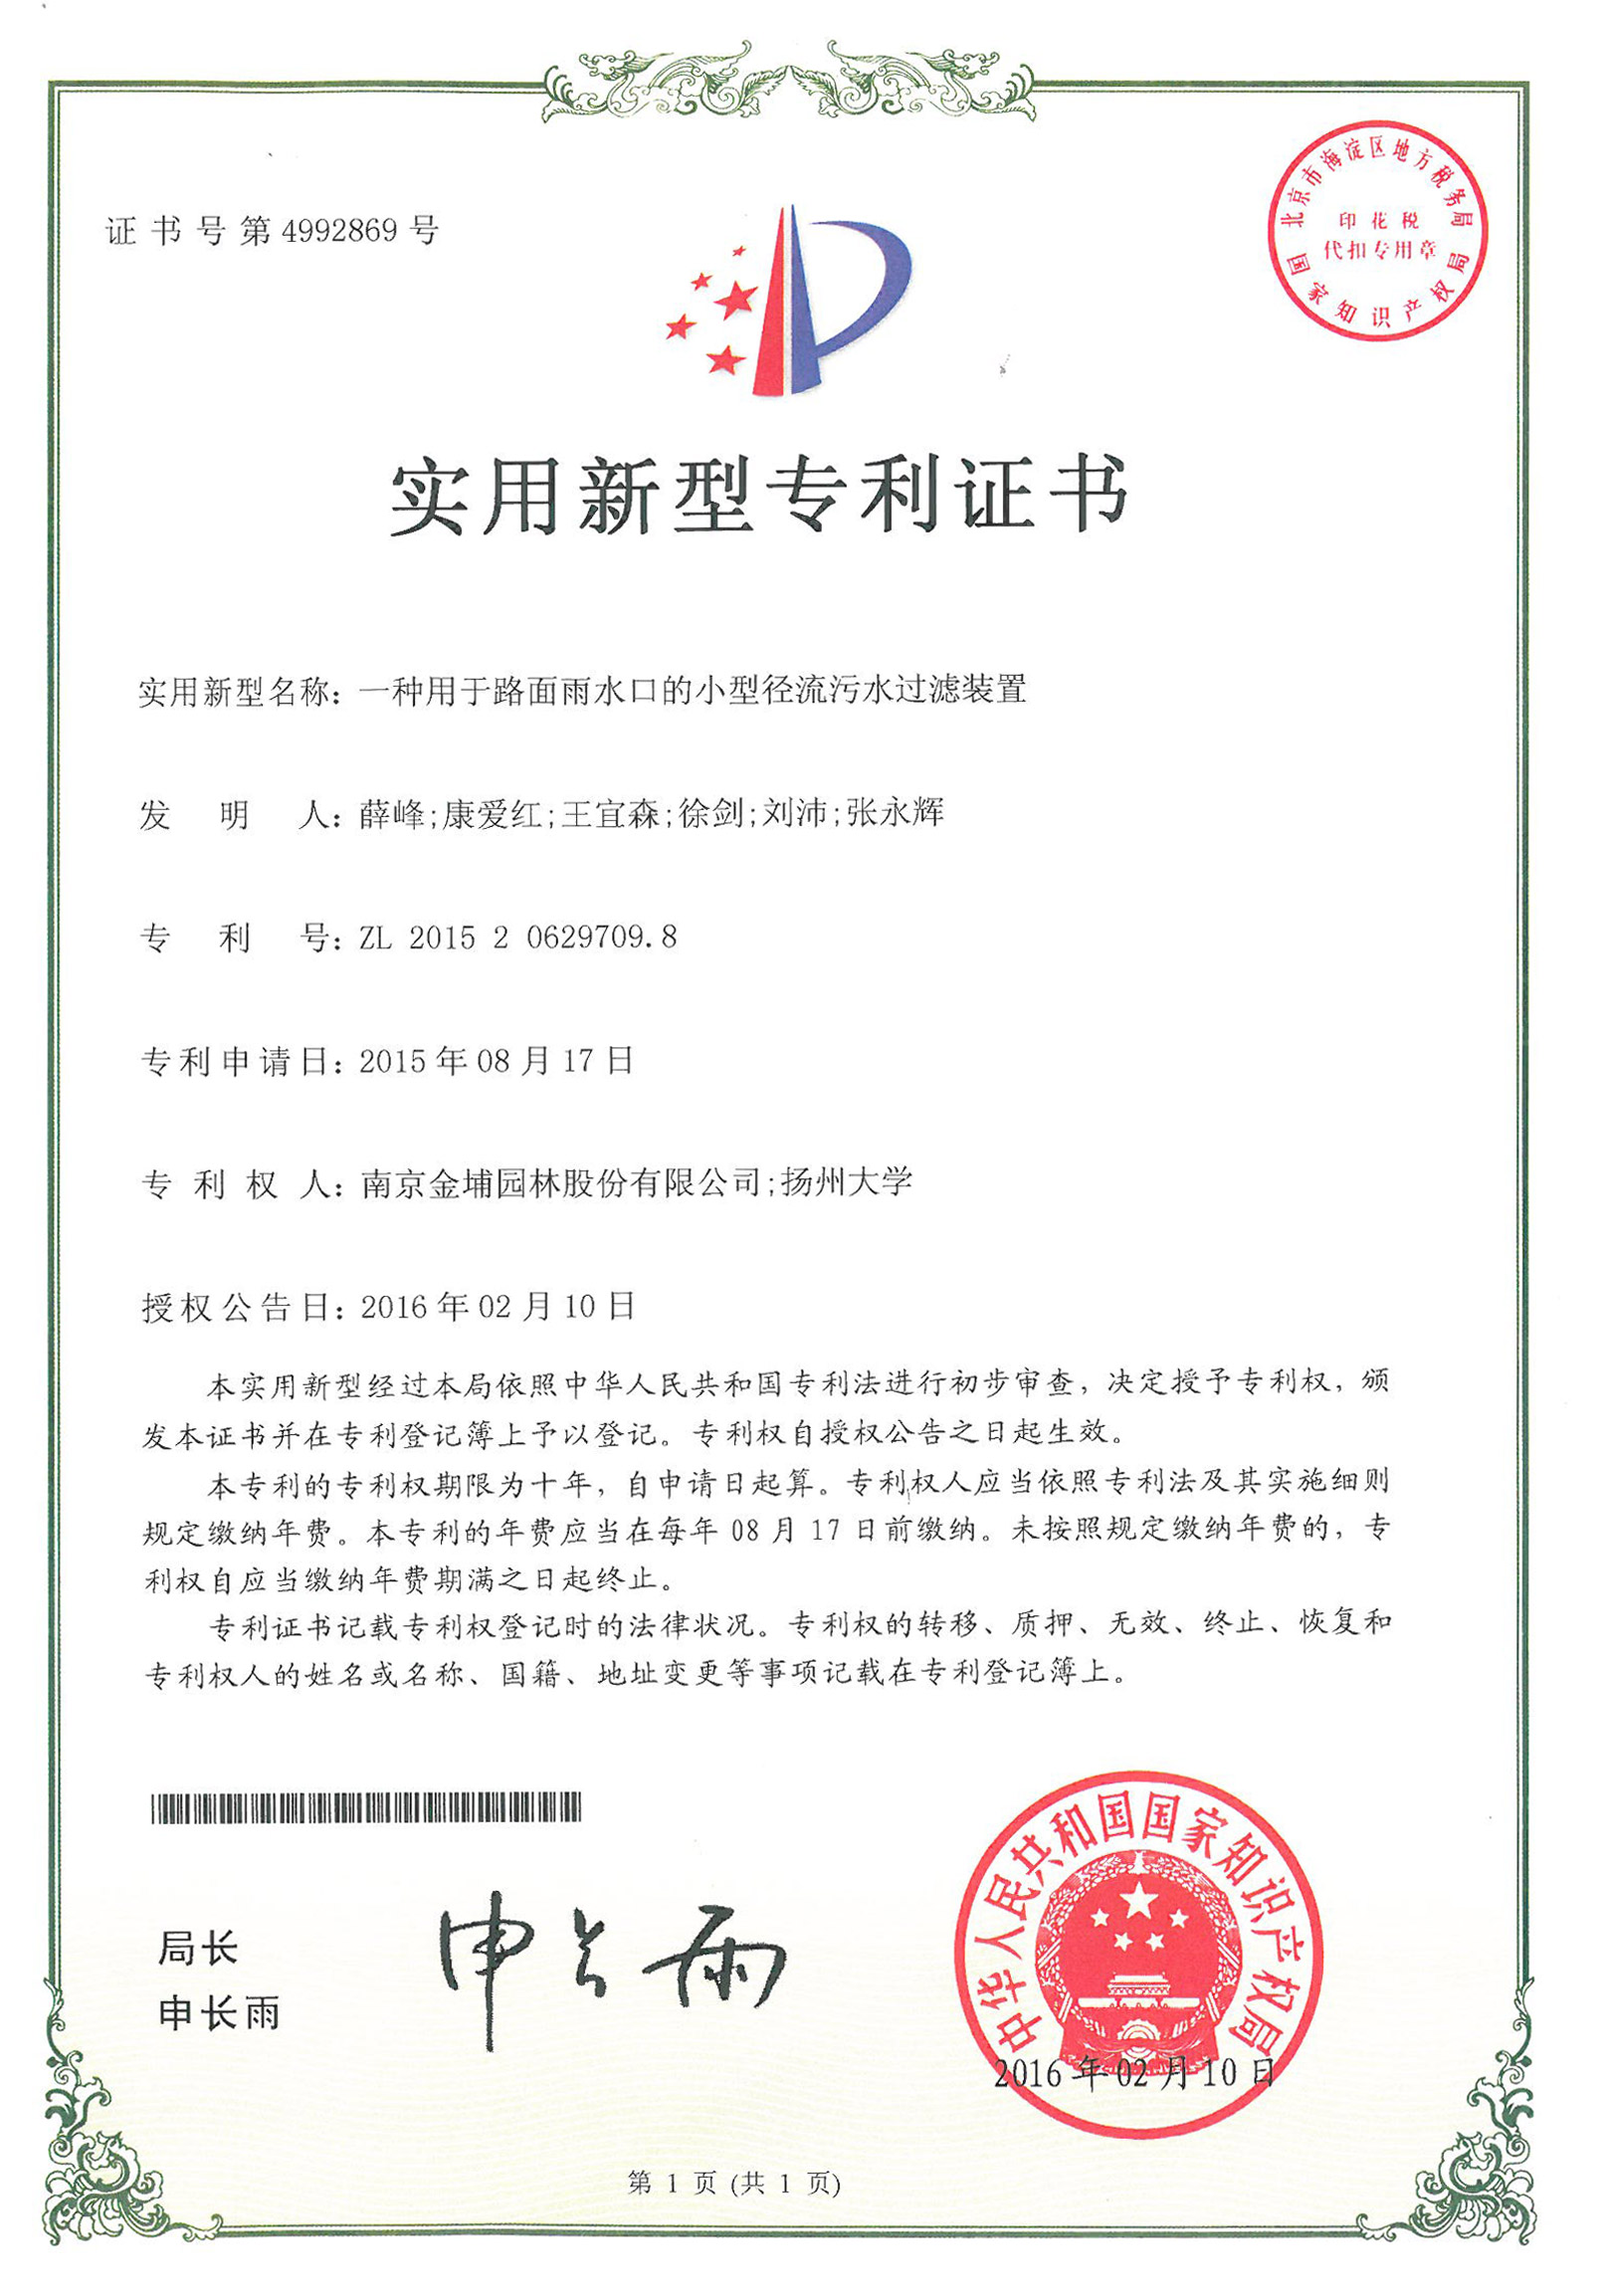 南京金埔园林股份有限公司又一项专利成功获得授权